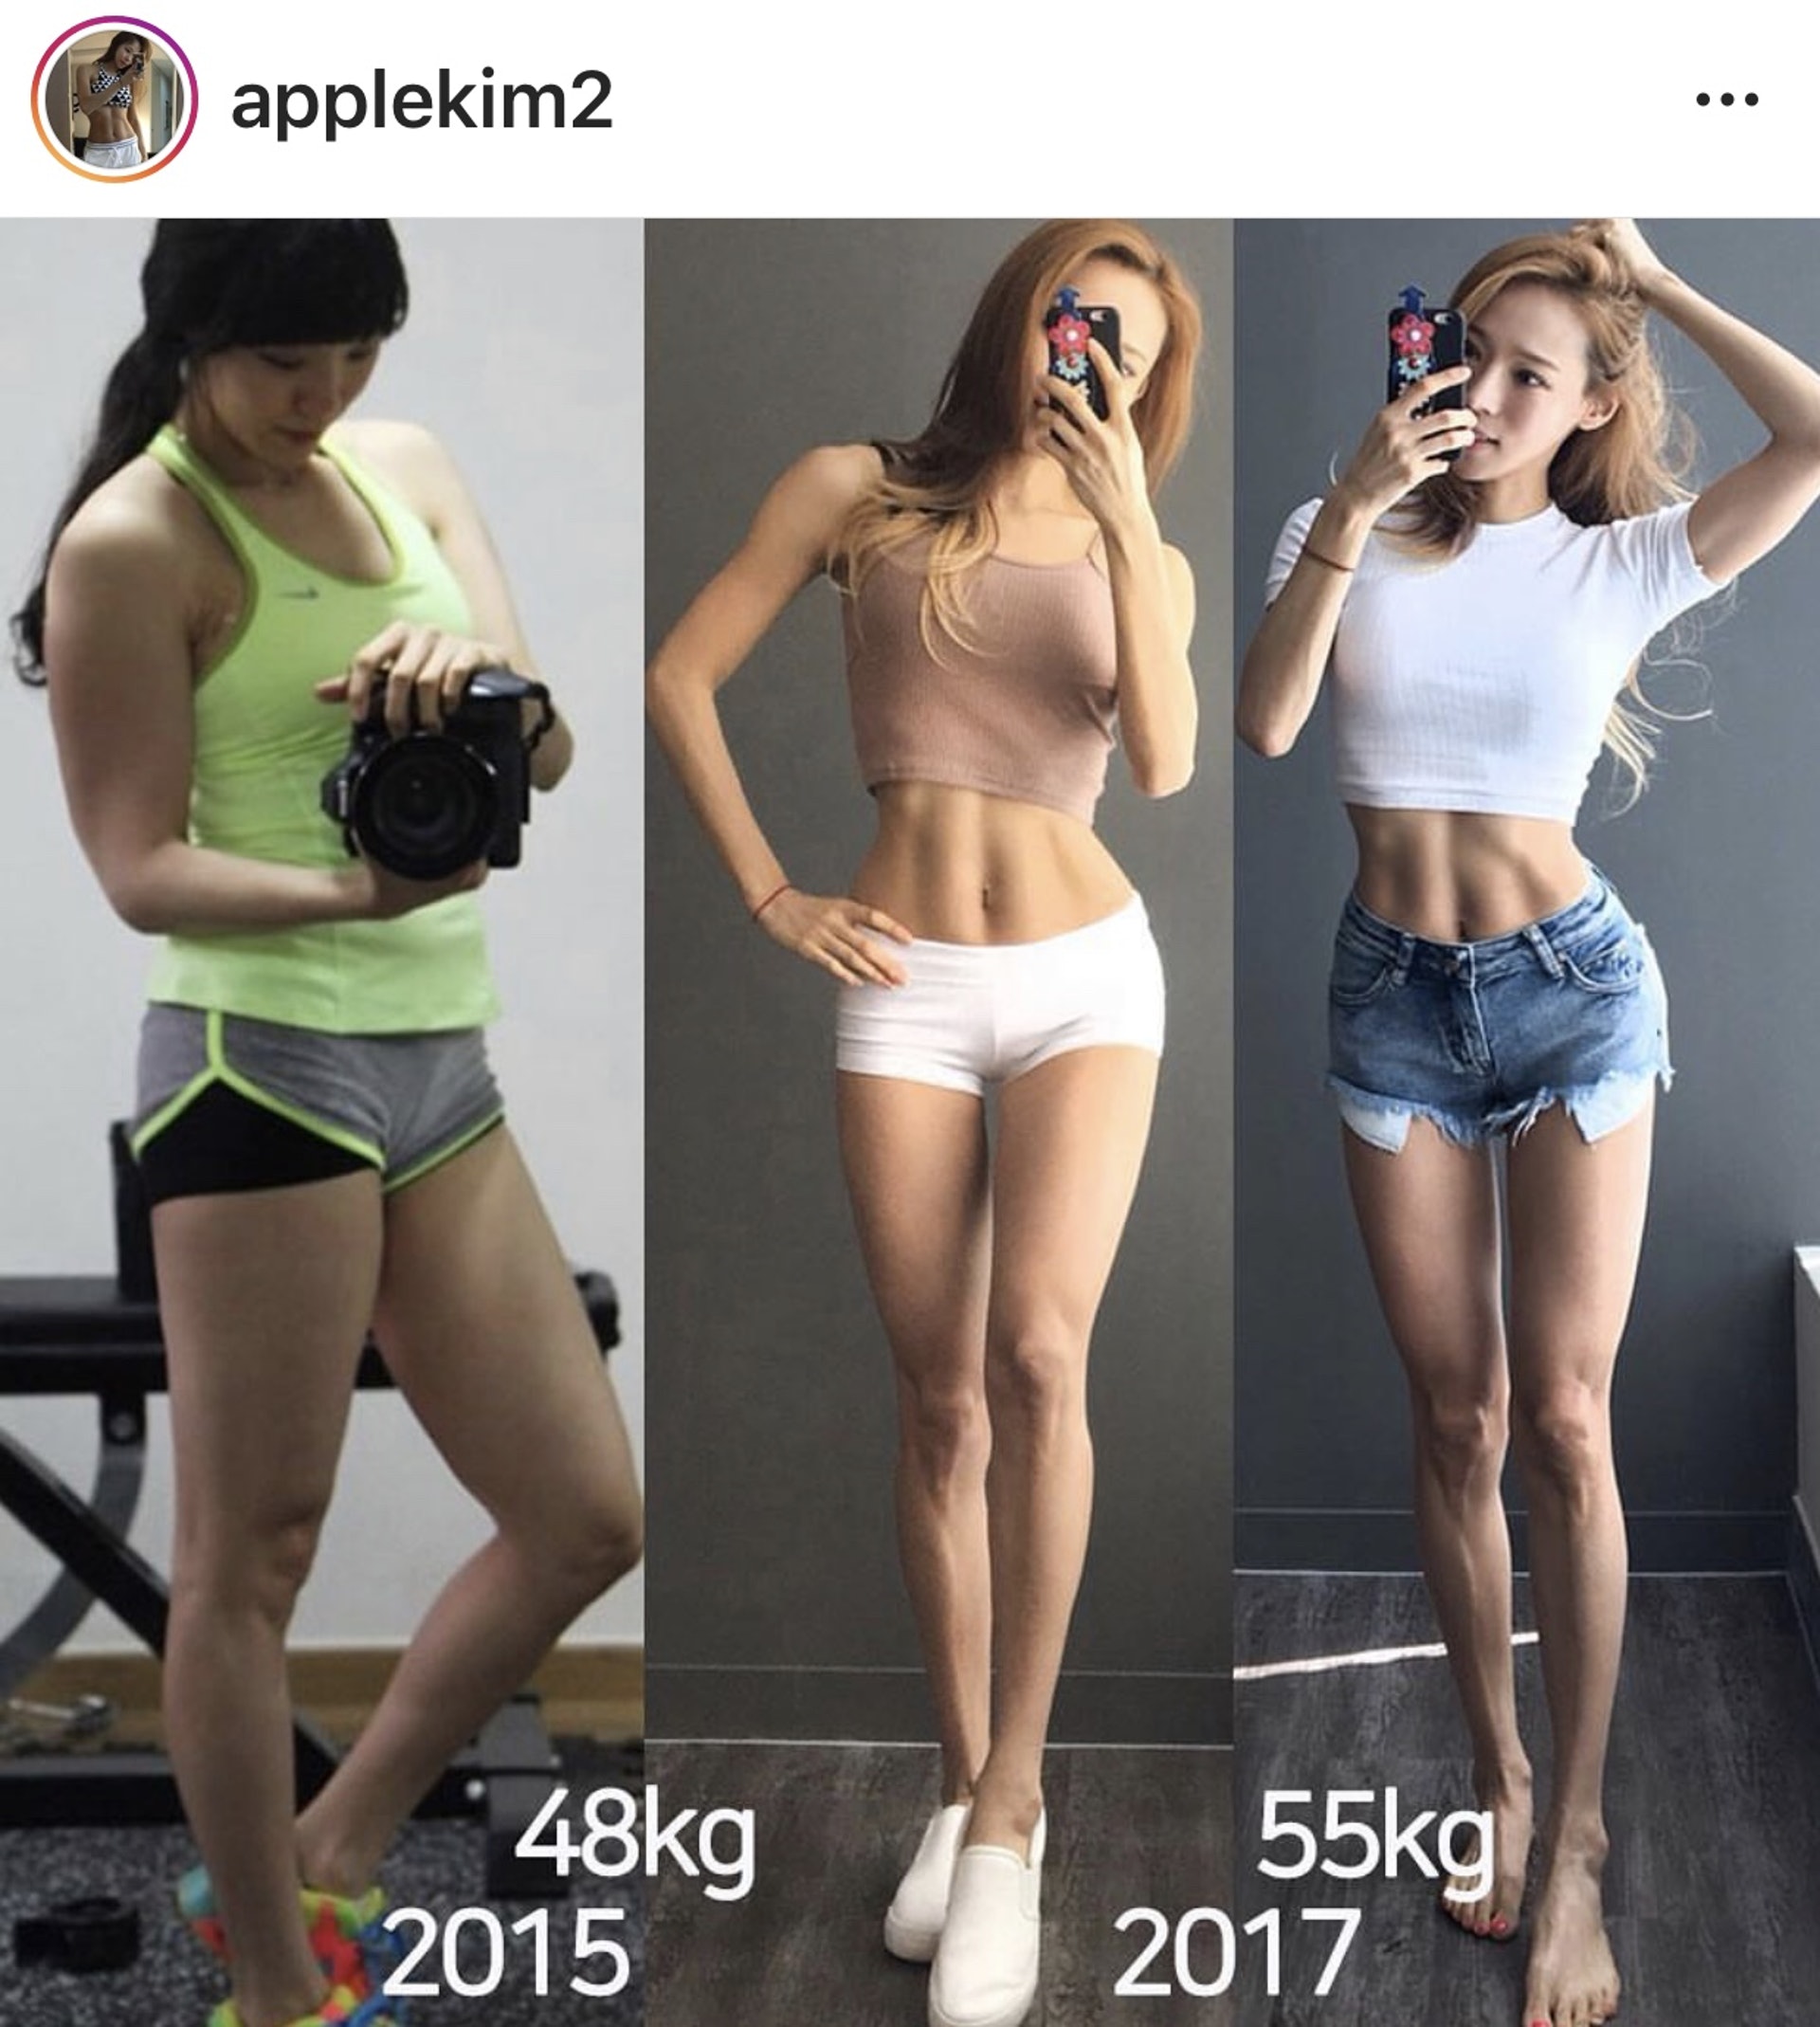 Apple Kim於2年間其實增磅了7公斤，但視覺上即使磅數重了，身型卻顯瘦，加強肌肉訓練是她的瘦身重點。（applekim2 IG）